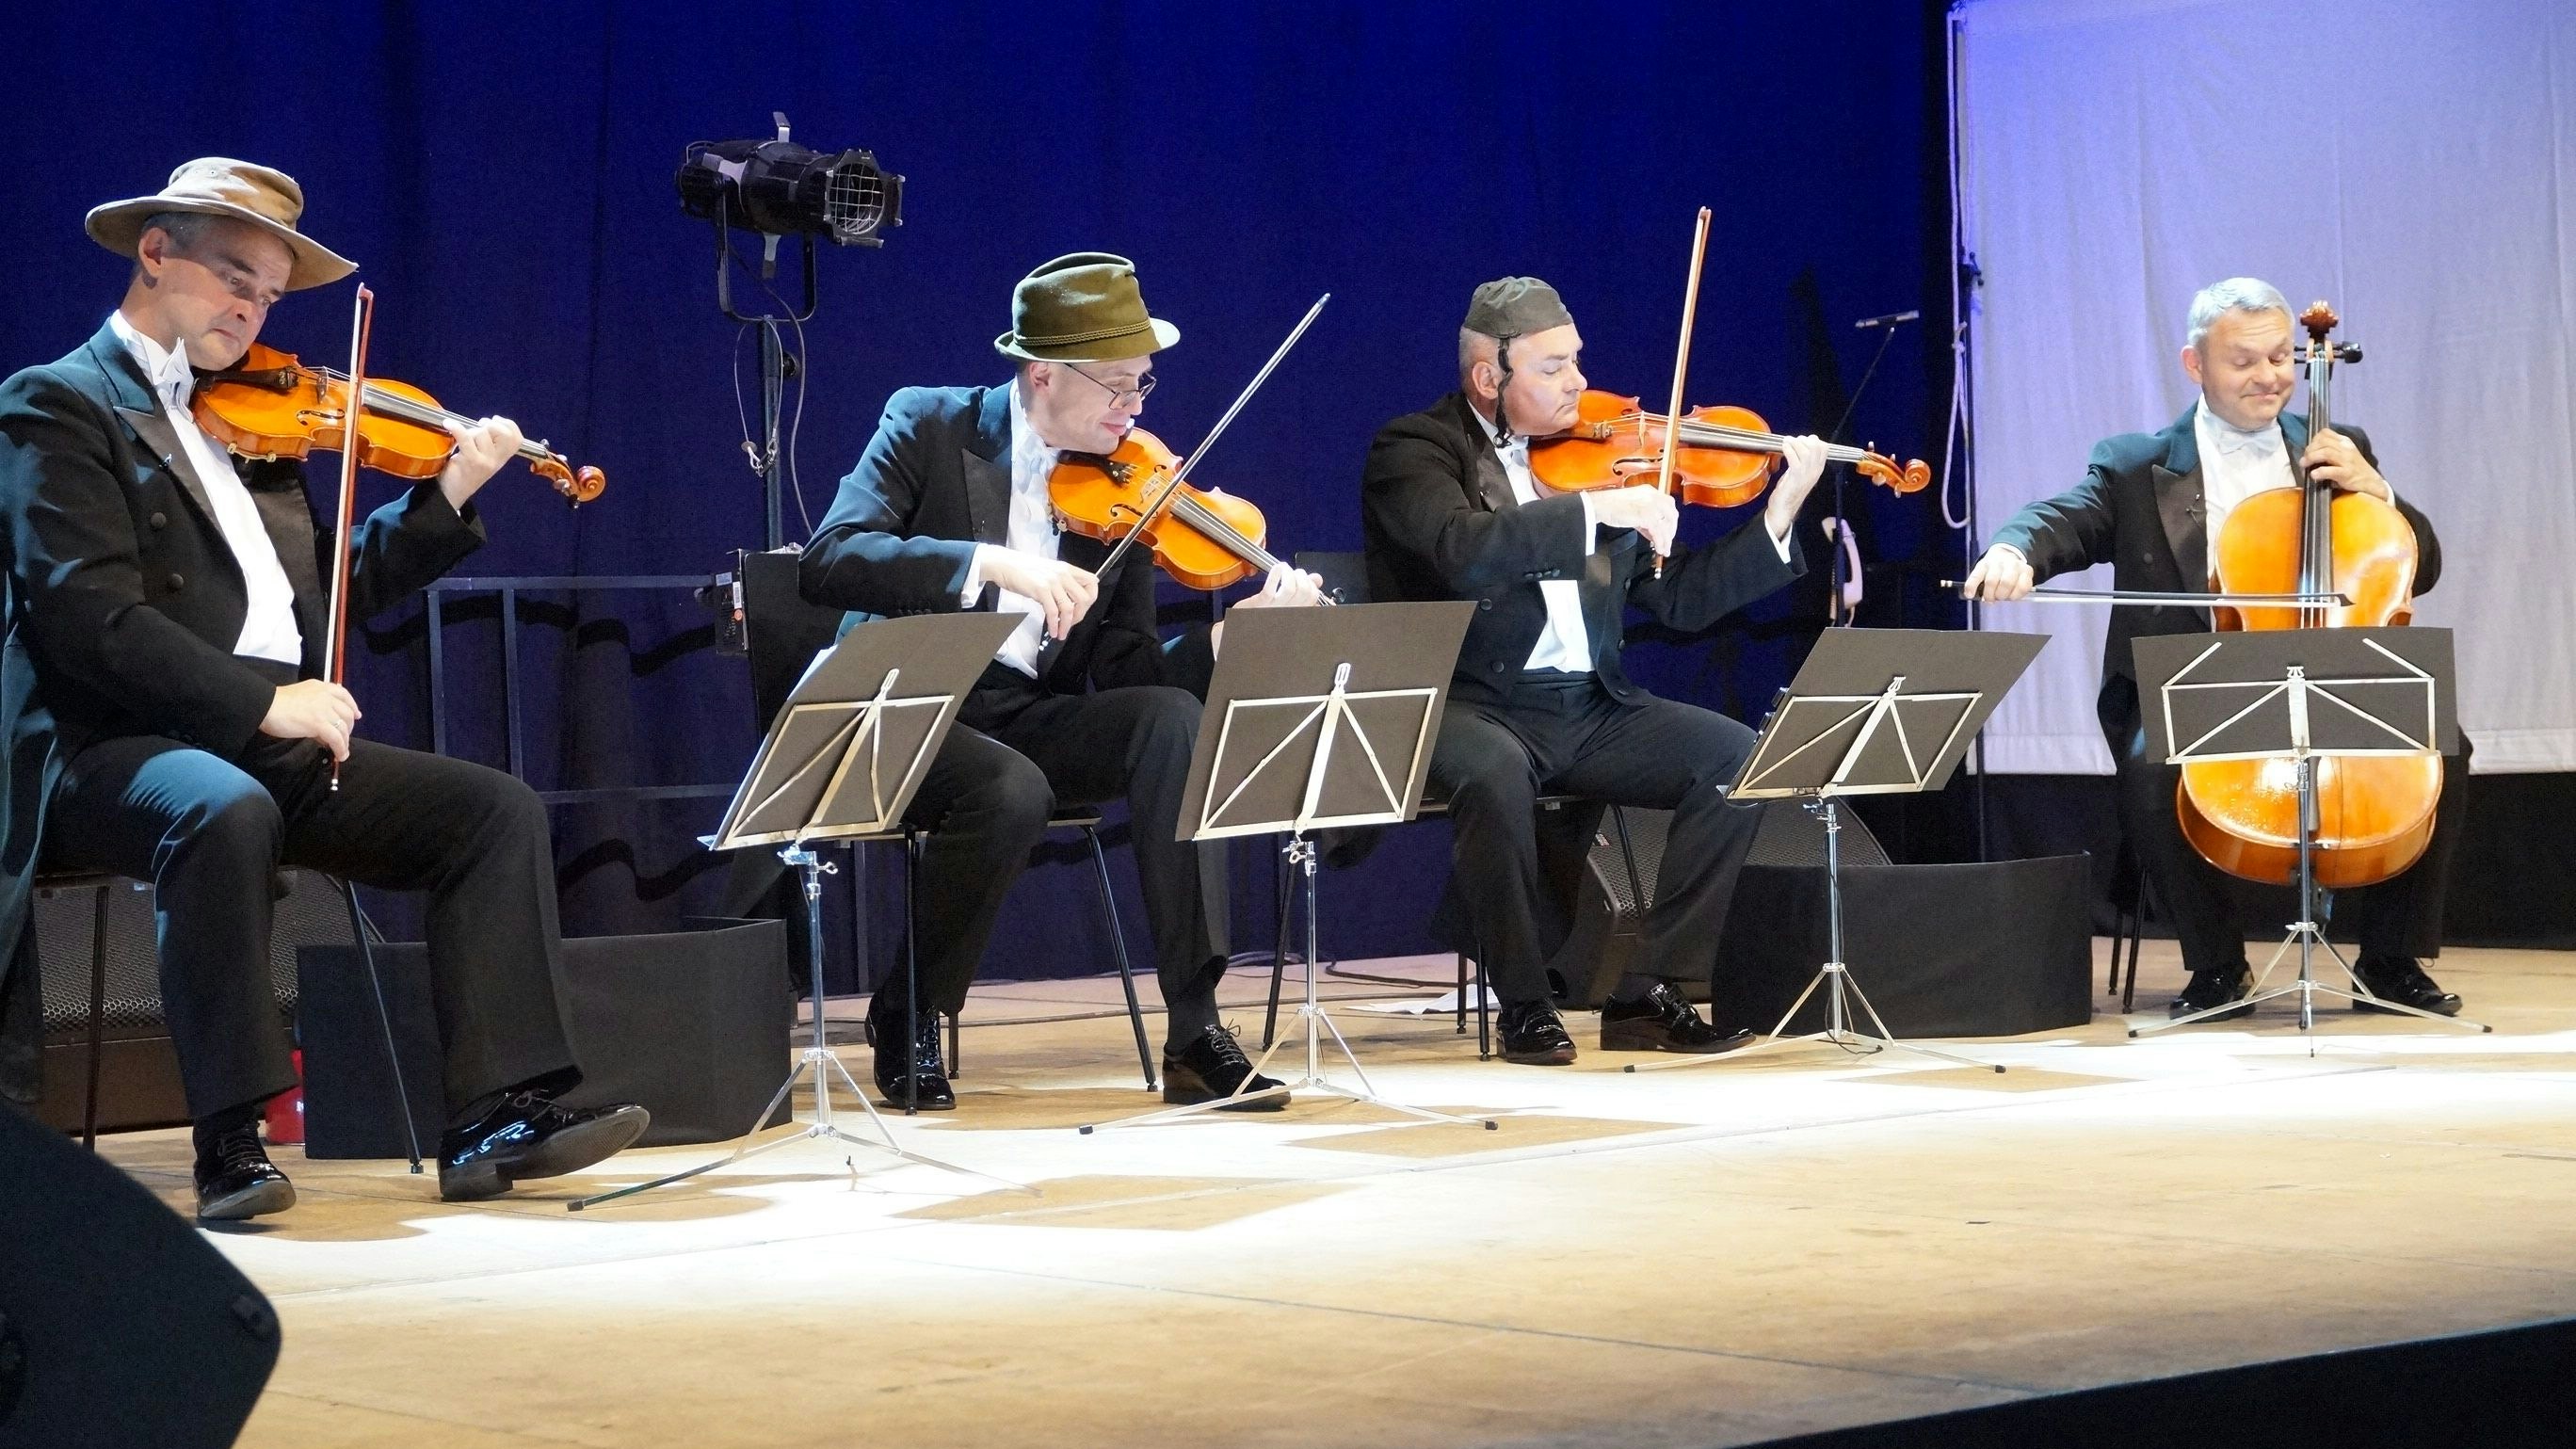 Spielt nicht nur Klassik: Das polnische MozART-Quartett bedient sich der Musik aller Genres und baut kleine Gags in seine Auftritte ein. Foto: Brauns-Bömermann